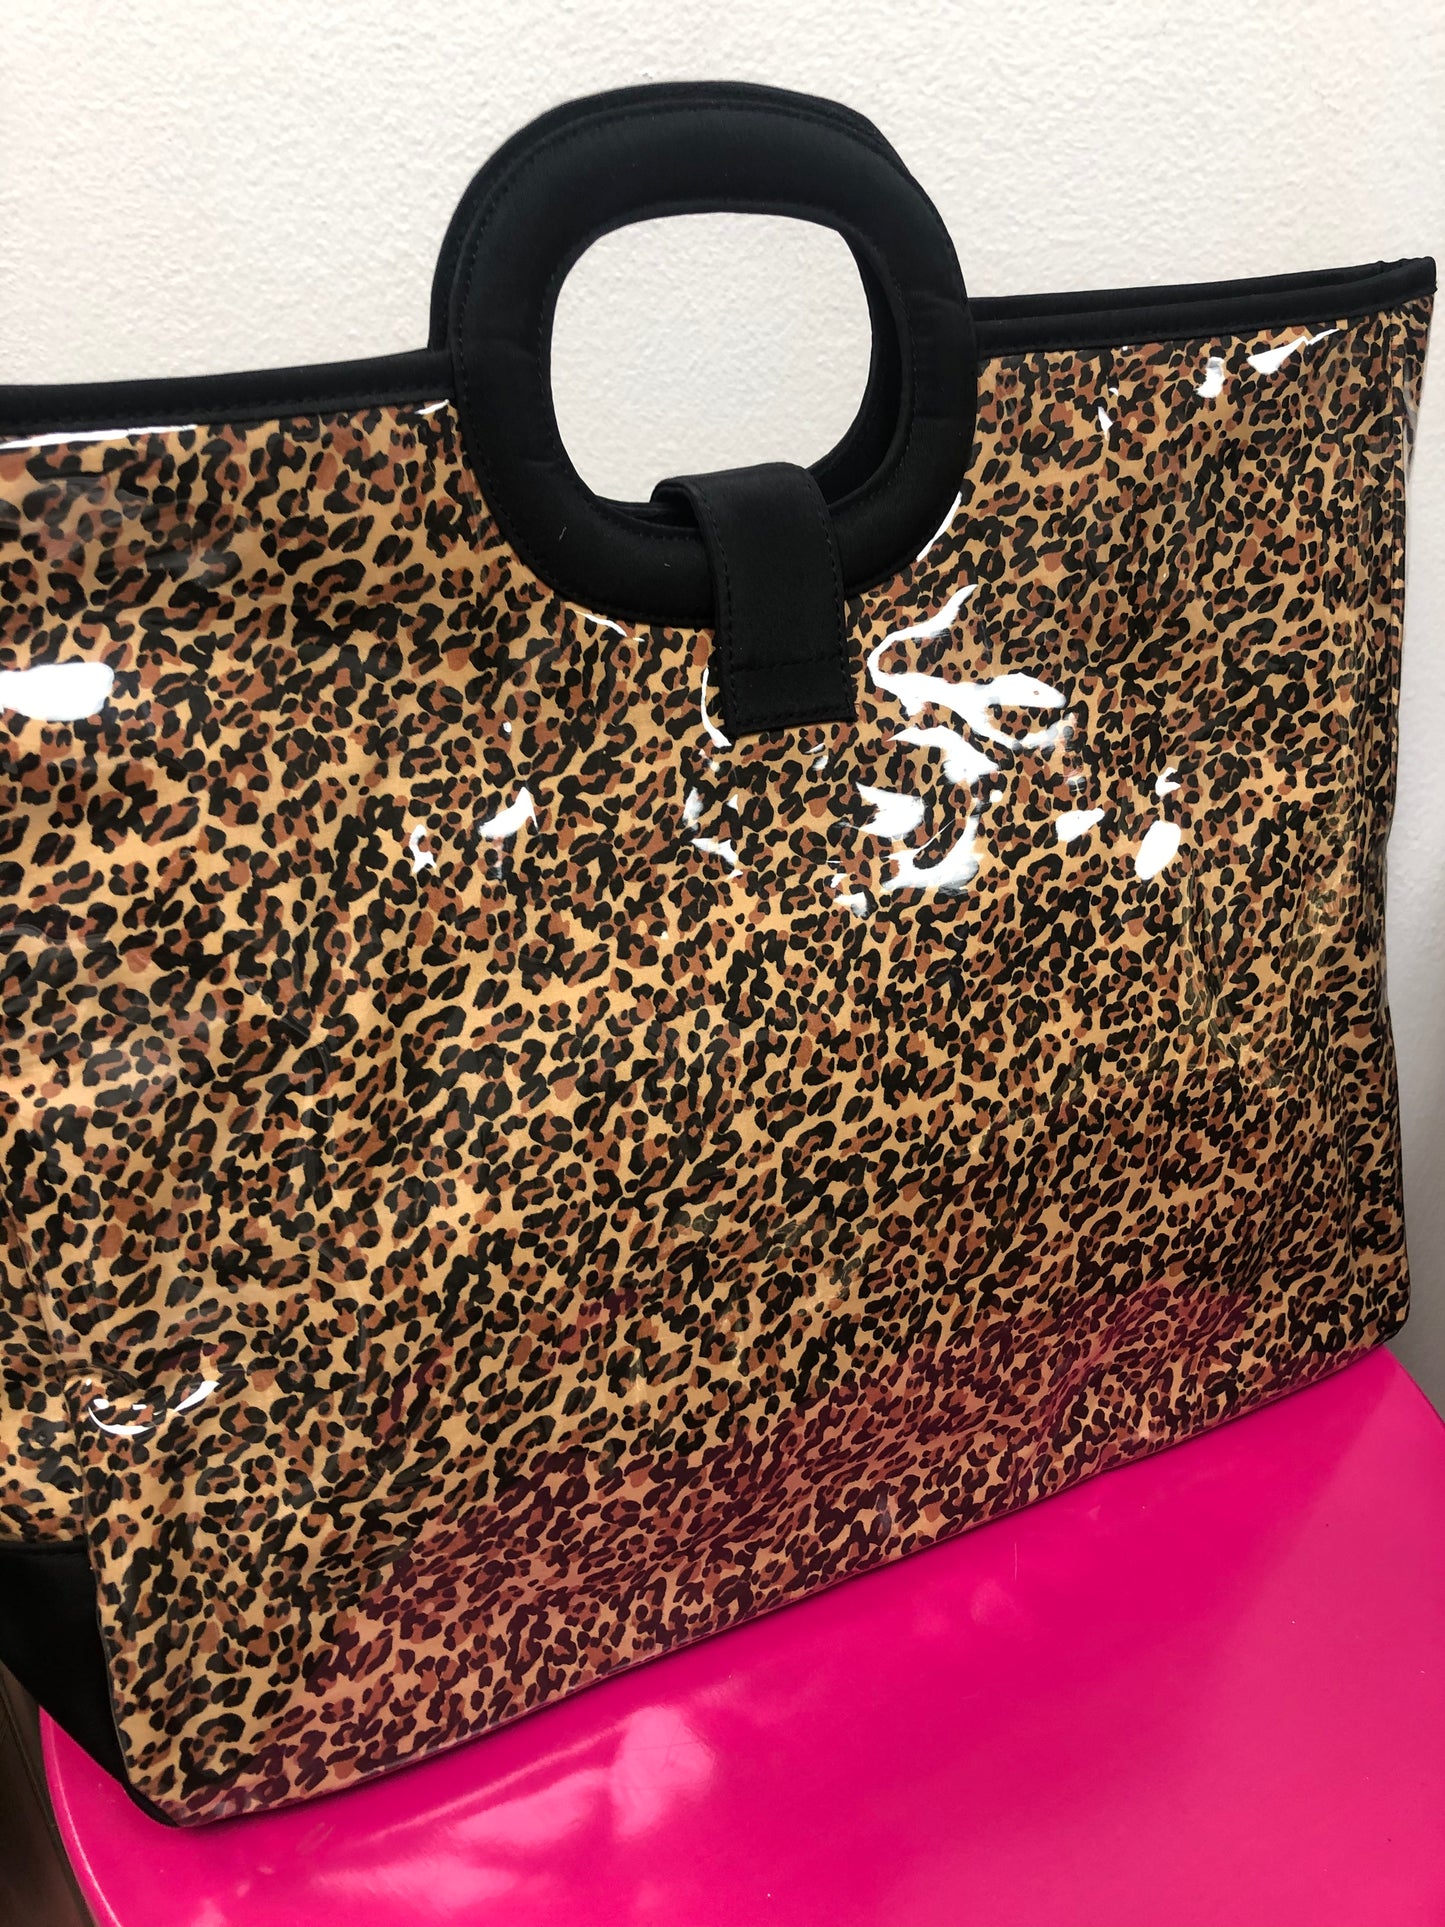 Vintage “Must Love Leopard” Bag